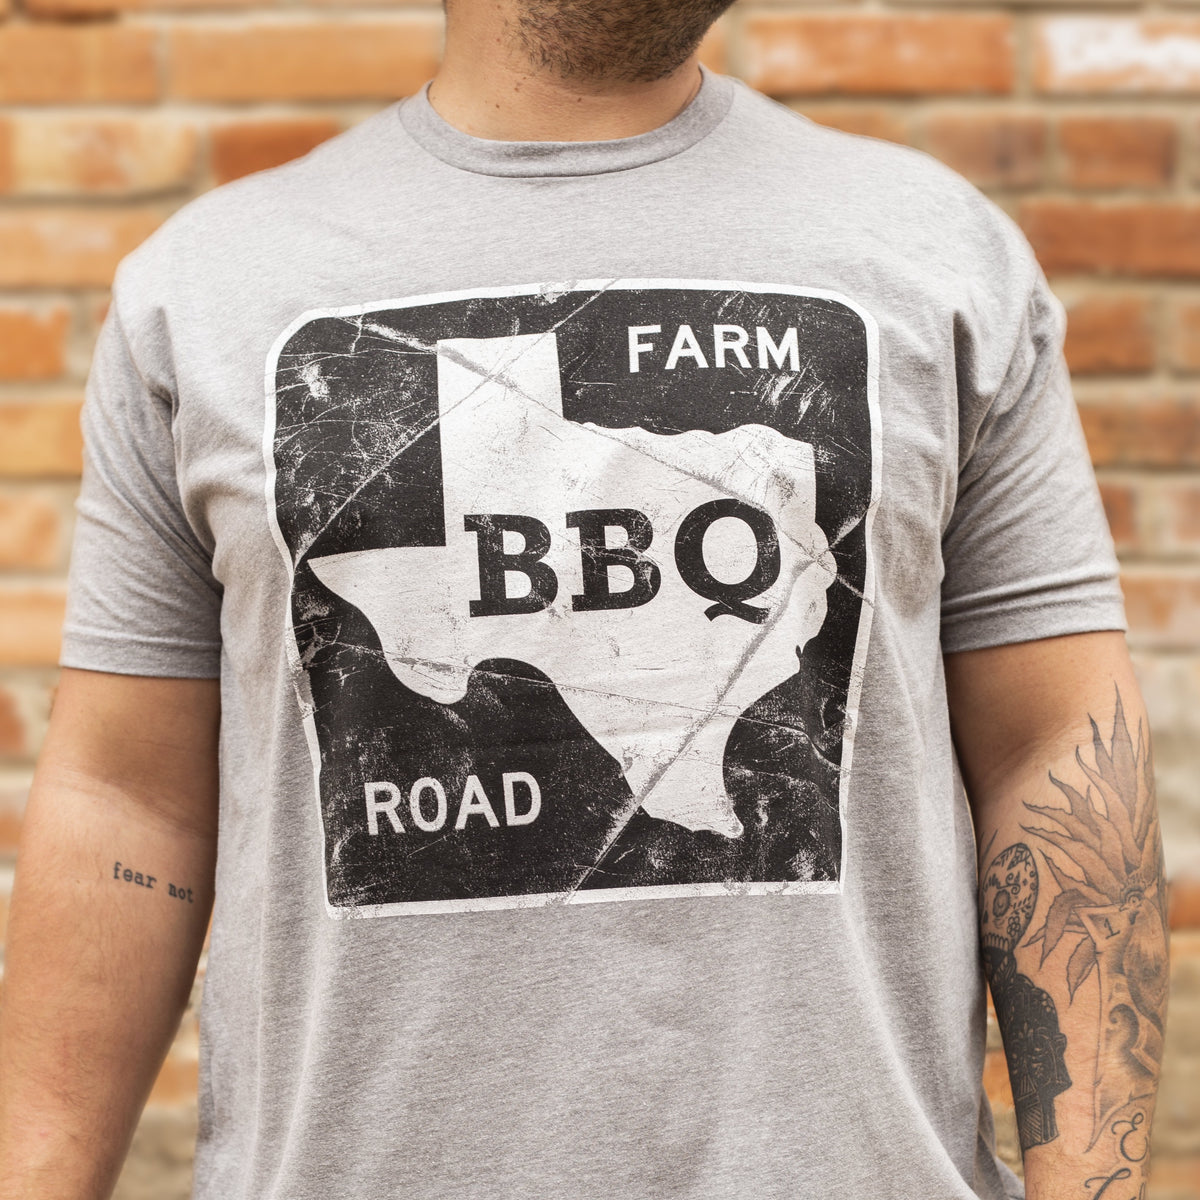 Farm Road BBQ T-Shirt